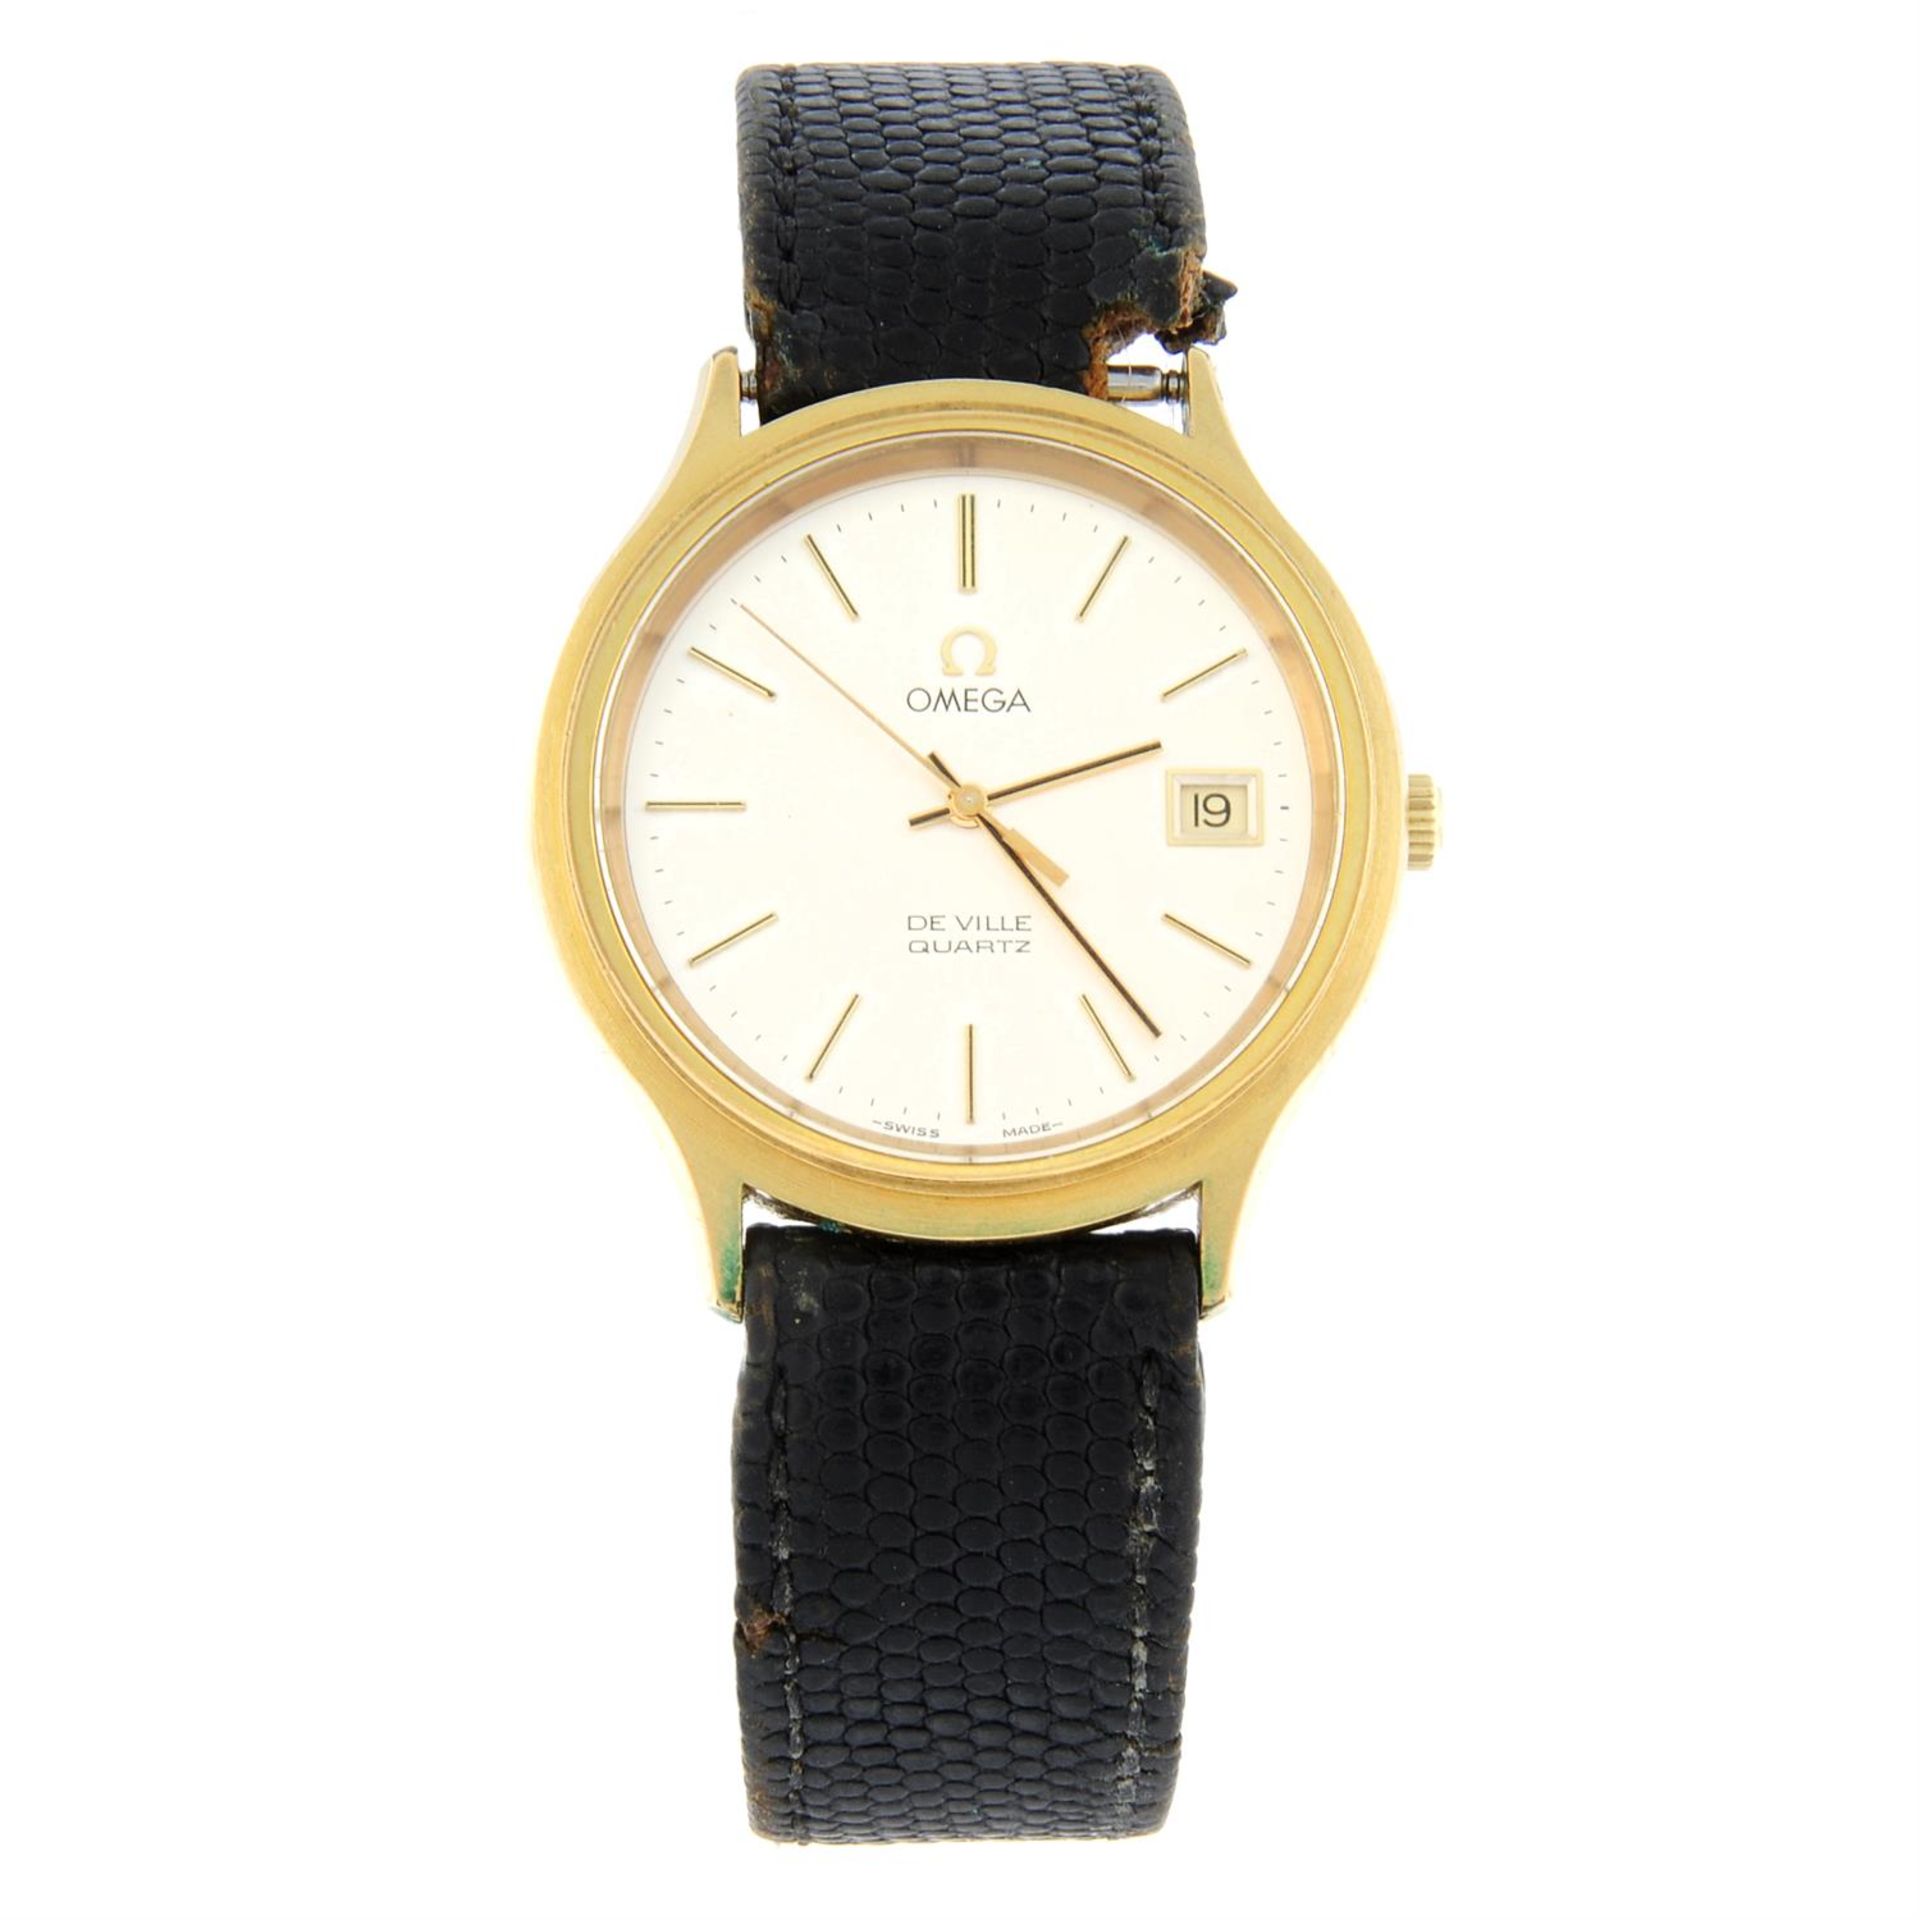 OMEGA - a gold plated De Ville wrist watch, 35mm